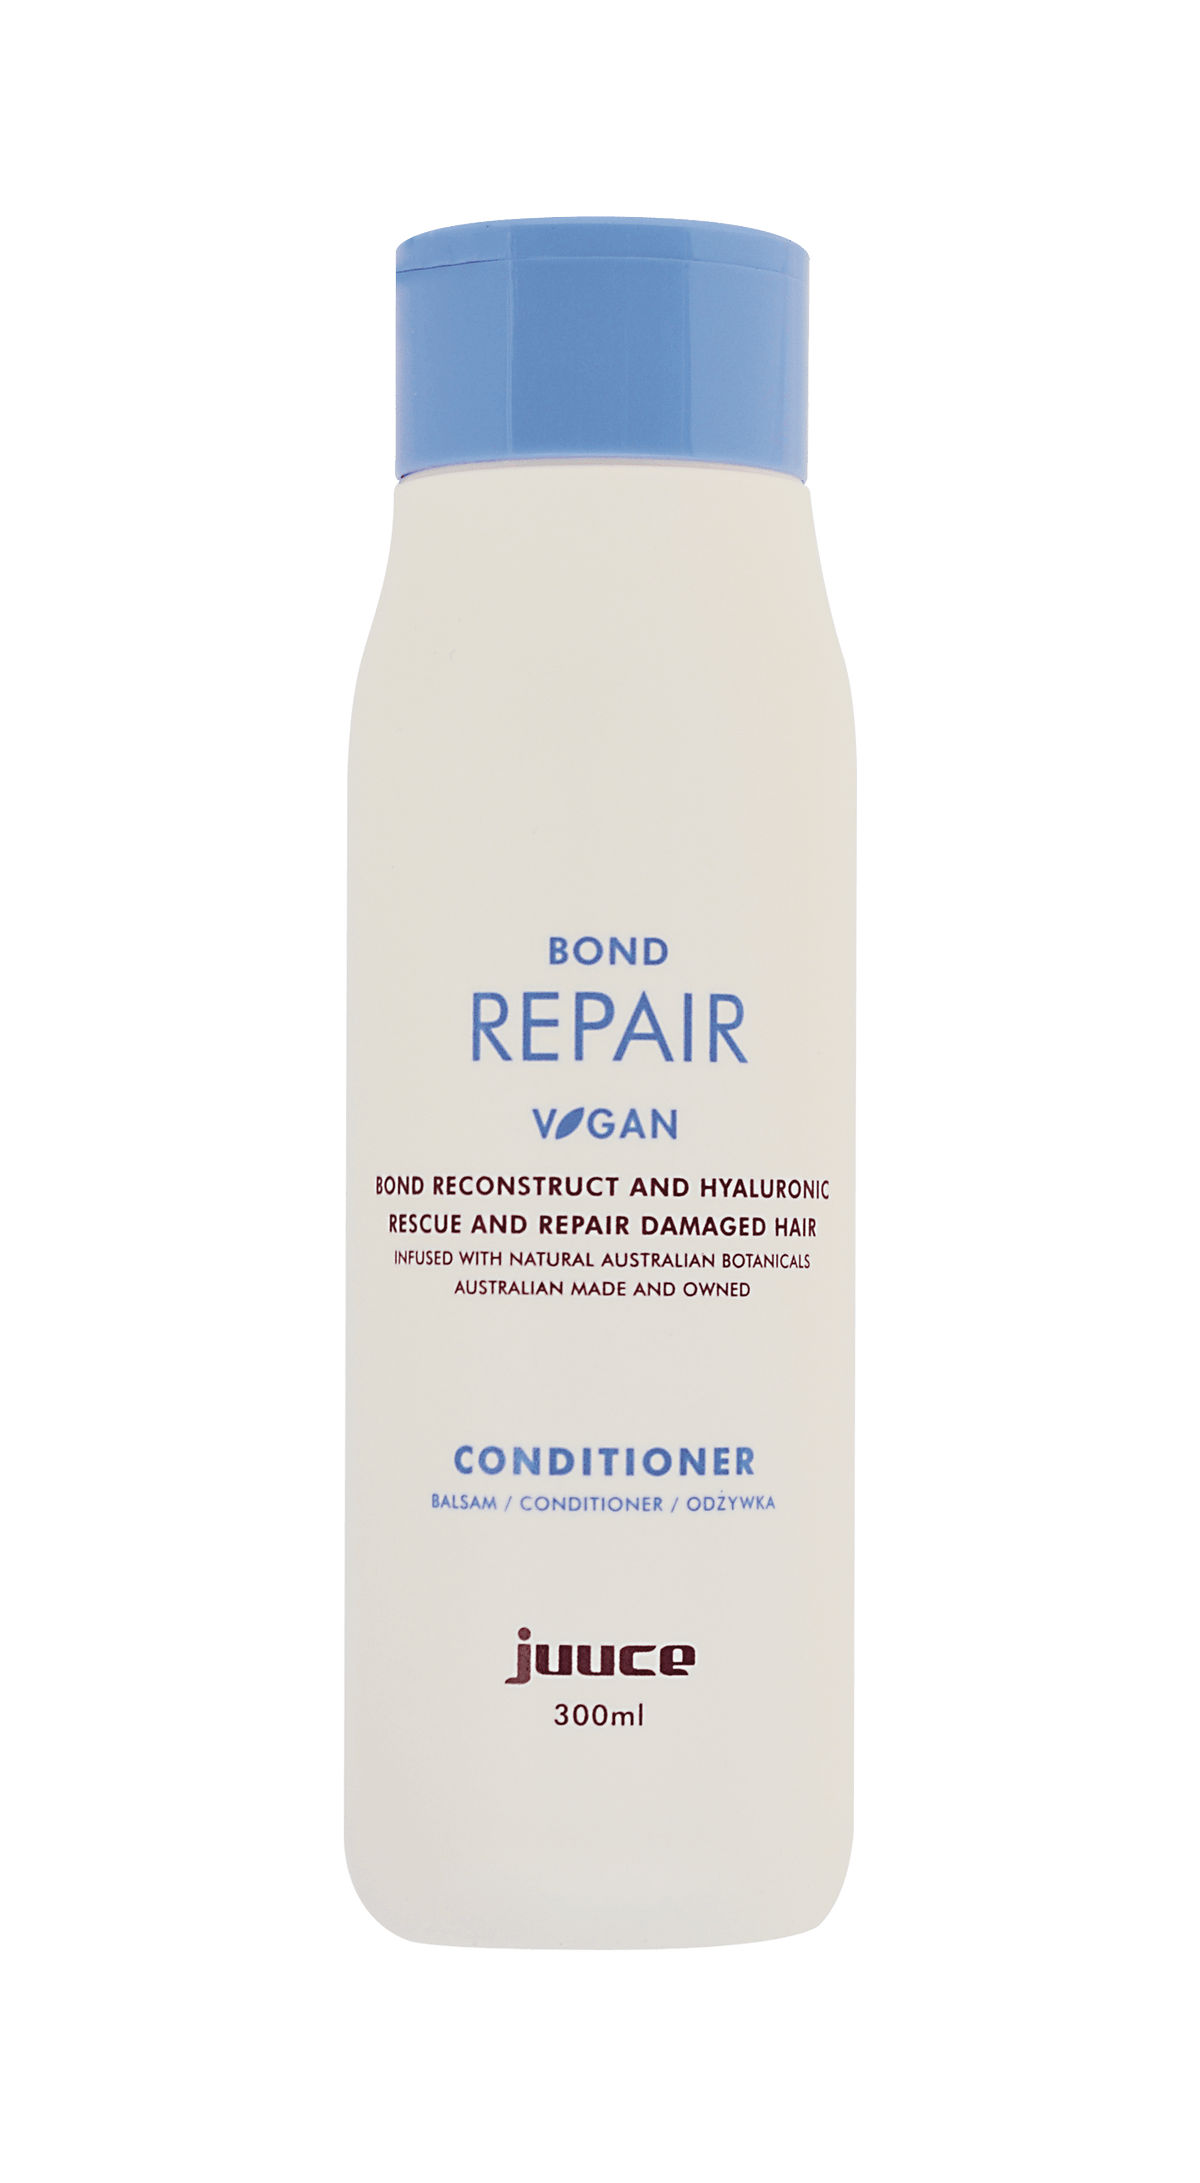 Juuce Bond REPAIR Conditioner 300ml